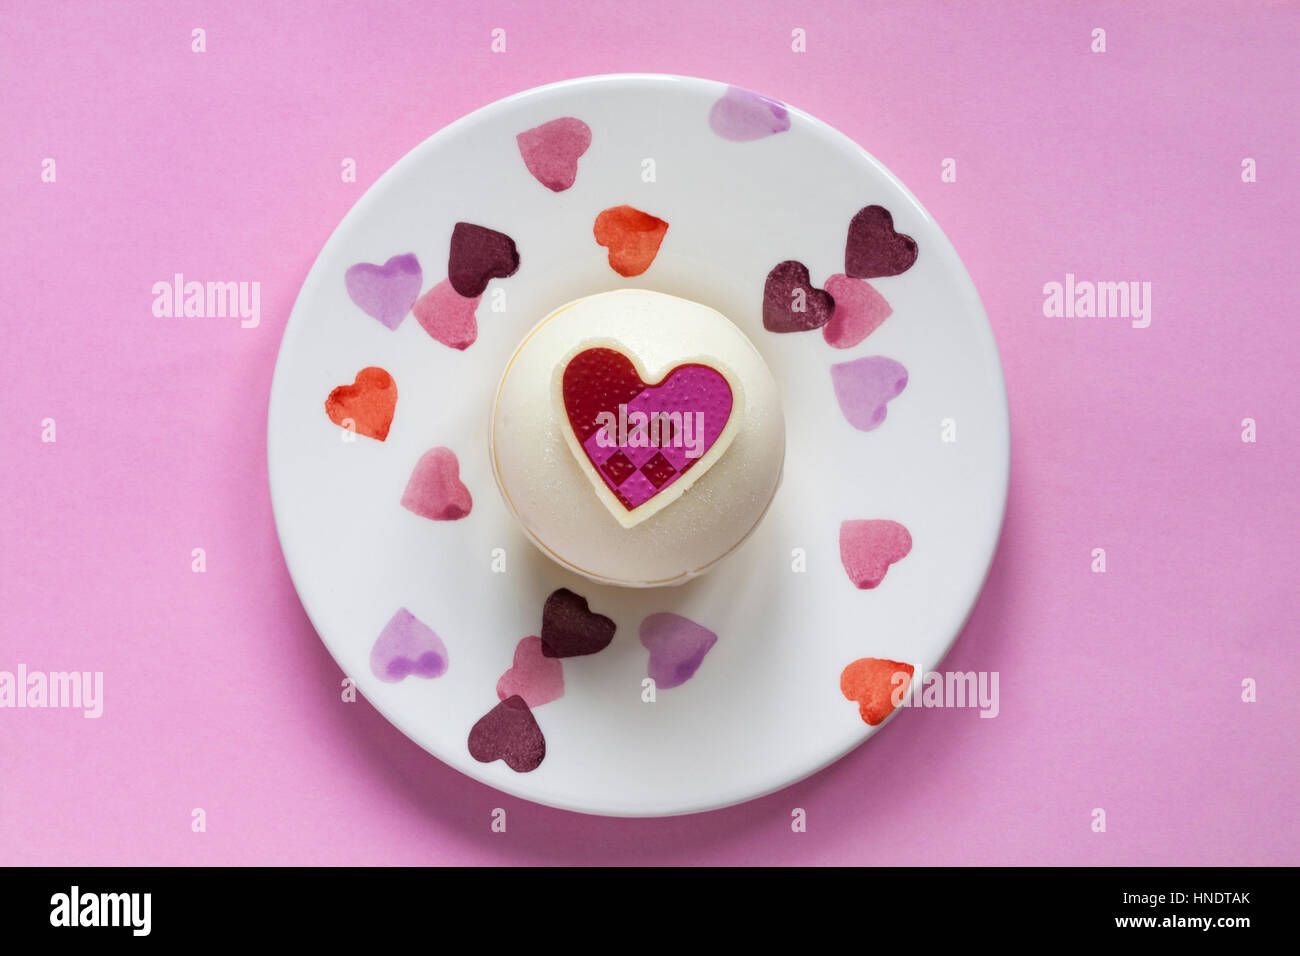 Schaut auf M & S Himbeere und Prosecco Kugeln zum Nachtisch zum Valentinstag auf dekorative Platte mit Herzen auf rosa Hintergrund Stockfoto